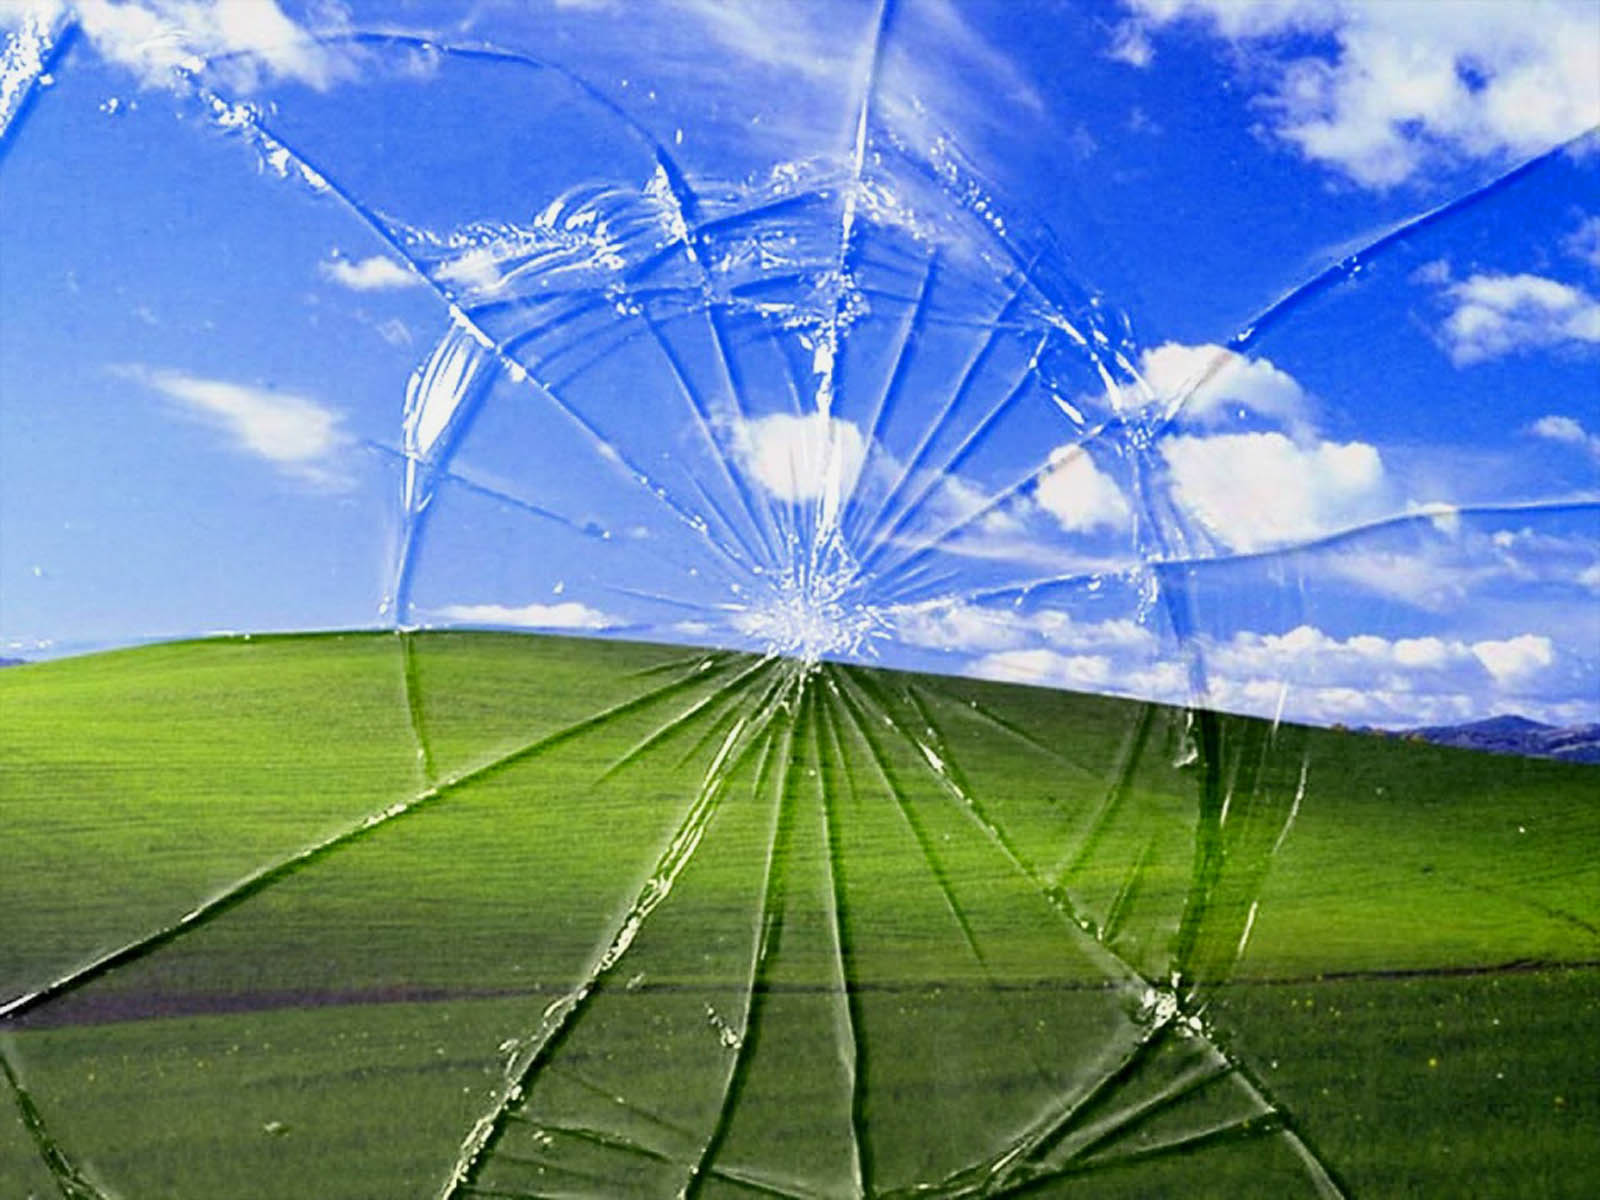 Windows Broken Glass Wallpapers sẽ khiến cho người xem không thể nào rời mắt khỏi màn hình. Nền vỡ kính độc đáo, tạo nên cảm giác như bạn đang nhìn vào một thế giới song song khác mang đến sự ấn tượng tuyệt vời cho màn hình của bạn.